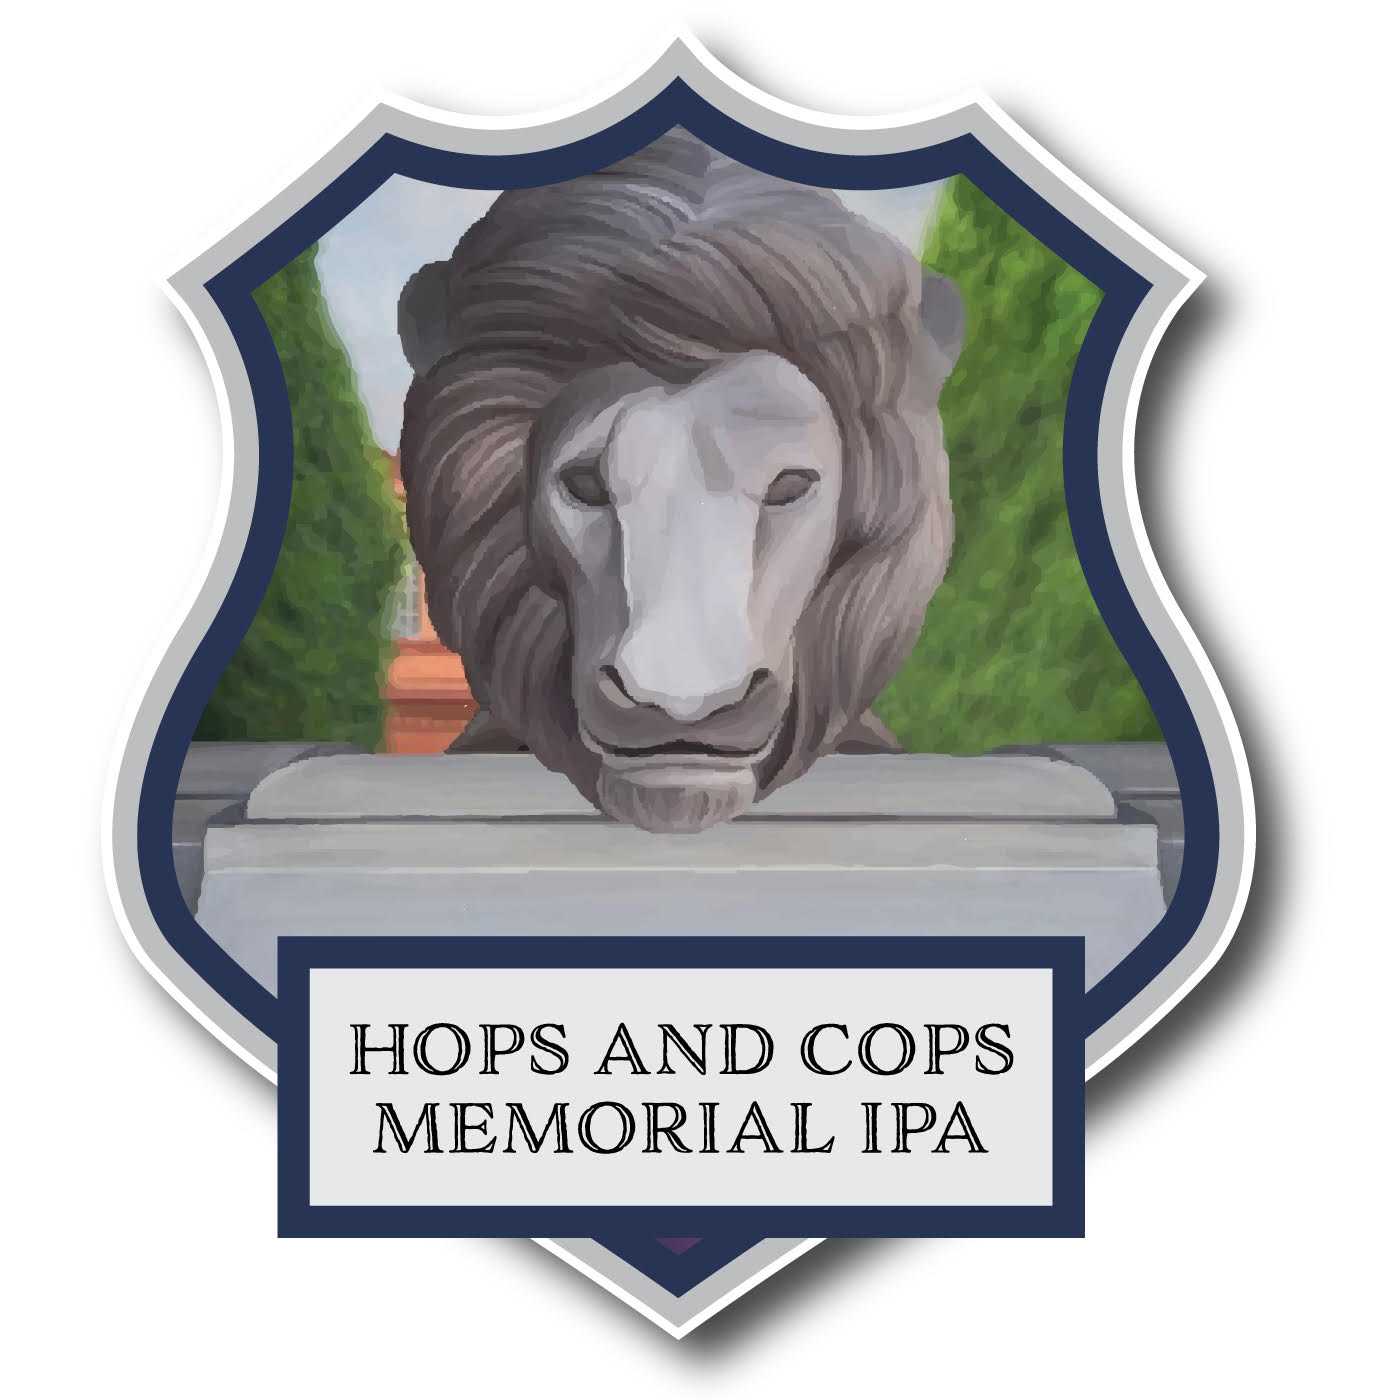 Hops and Cops